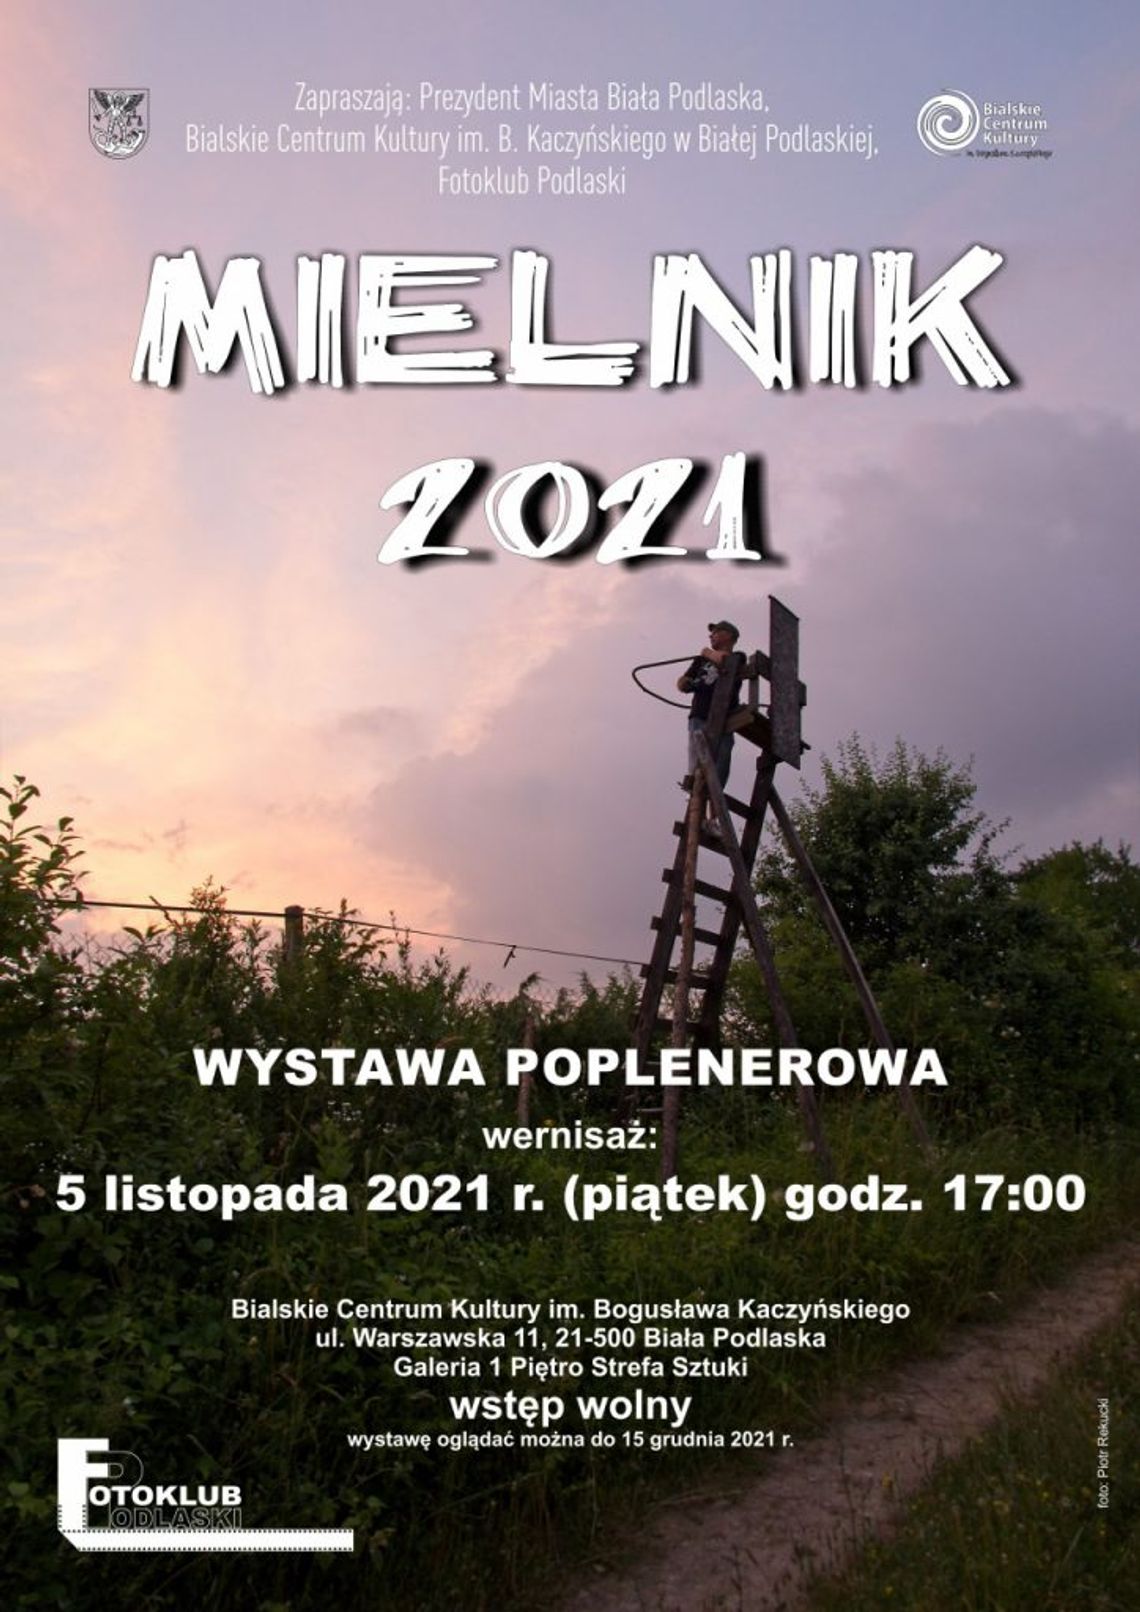 Wystawa poplenerowa Fotoklubu Podlaskiego "Mielnik 2021"